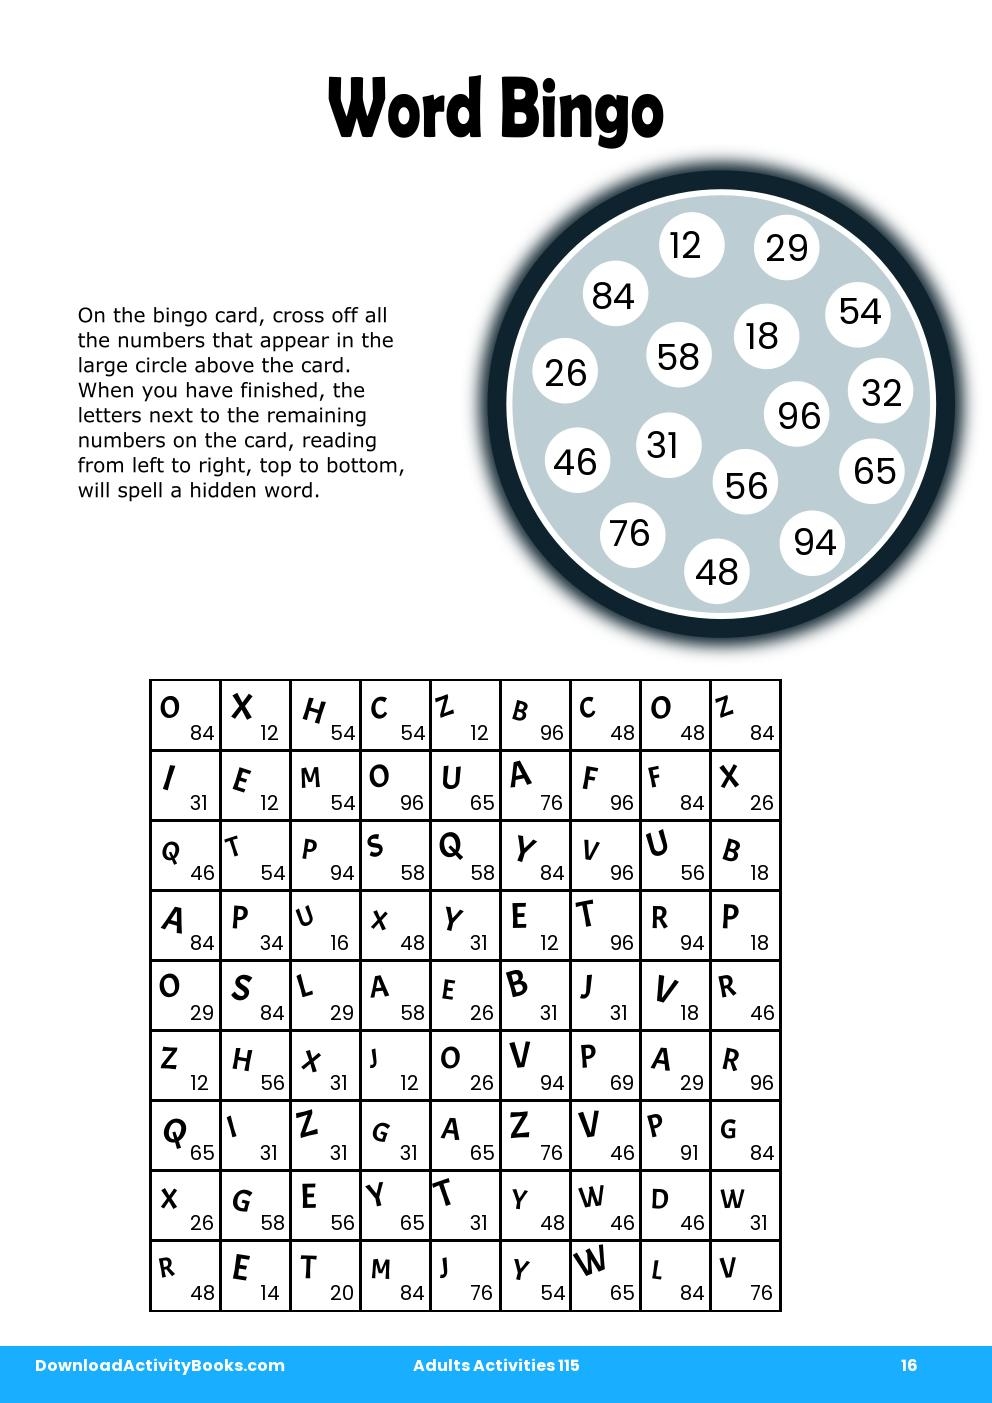 Word Bingo in Adults Activities 115